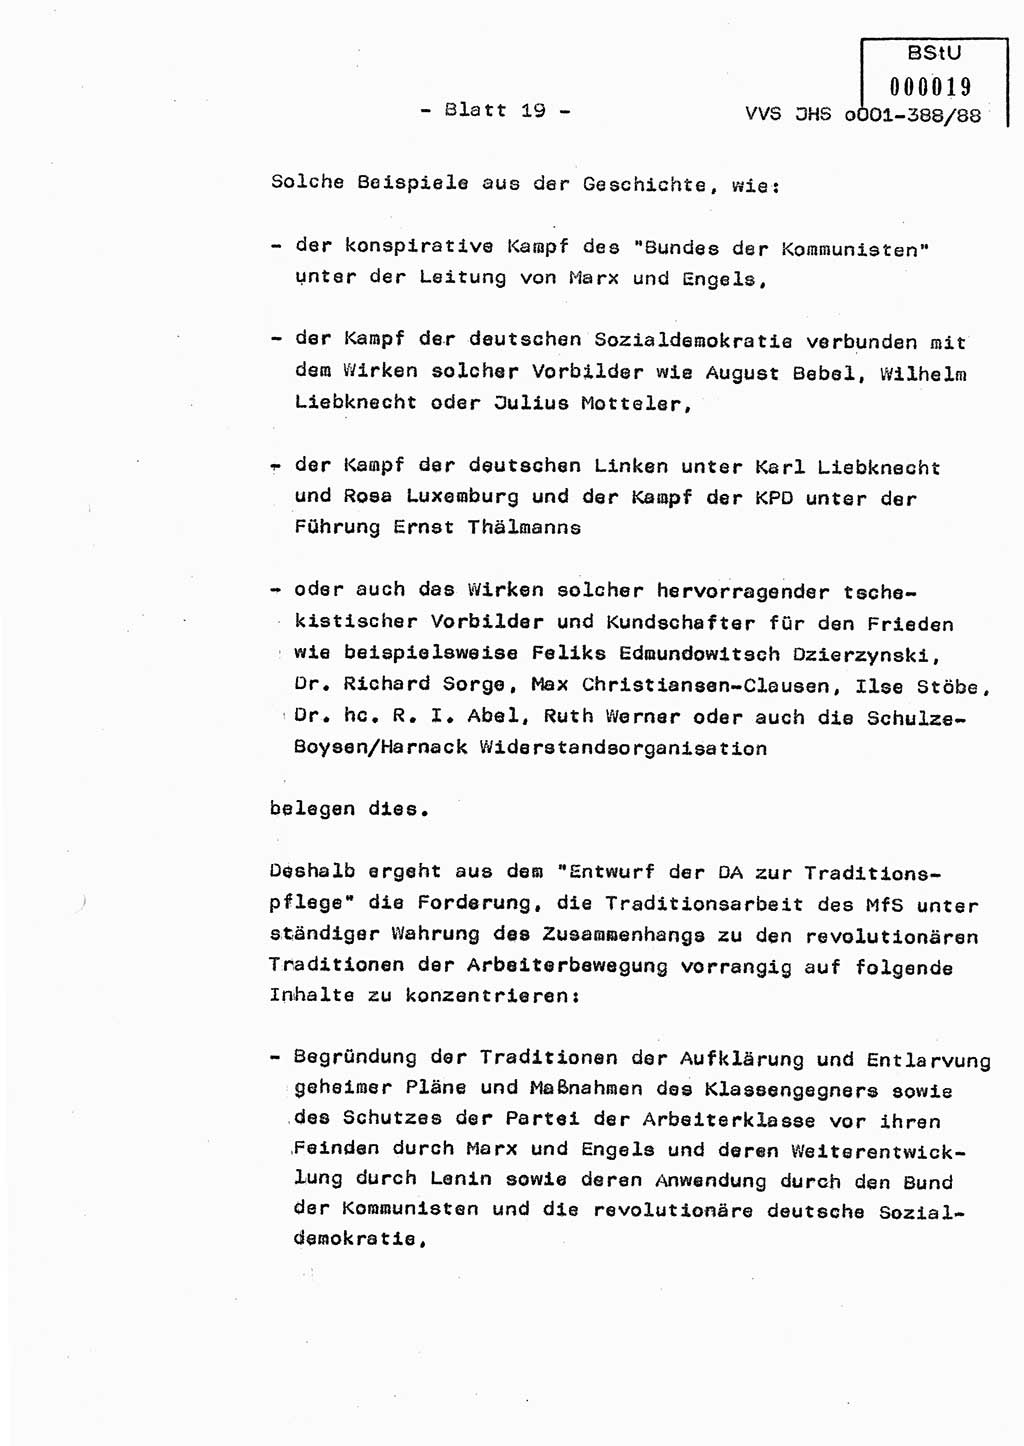 Diplomarbeit Hauptmann Heinz Brixel (Abt. ⅩⅣ), Ministerium für Staatssicherheit (MfS) [Deutsche Demokratische Republik (DDR)], Juristische Hochschule (JHS), Vertrauliche Verschlußsache (VVS) o001-388/88, Potsdam 1988, Blatt 19 (Dipl.-Arb. MfS DDR JHS VVS o001-388/88 1988, Bl. 19)